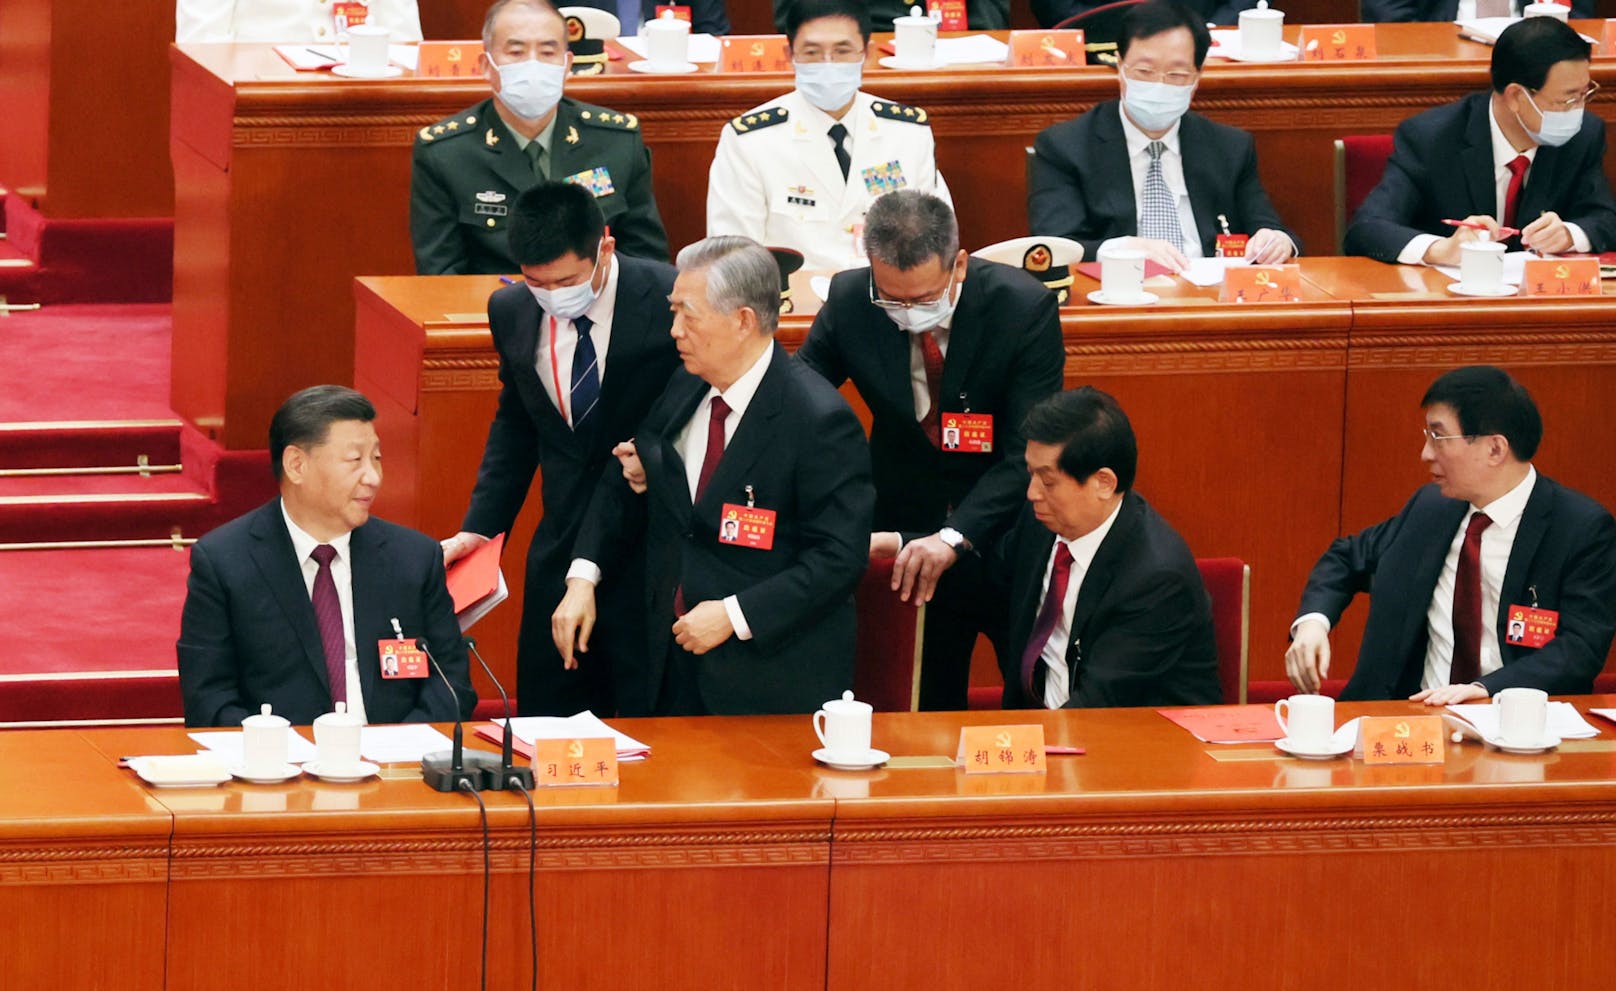 Wird von Securitys abgeführt: Chinas Nummer 2 Hu Jintao. Staatschef Xi Jinping (links) ist unbeeindrucht.